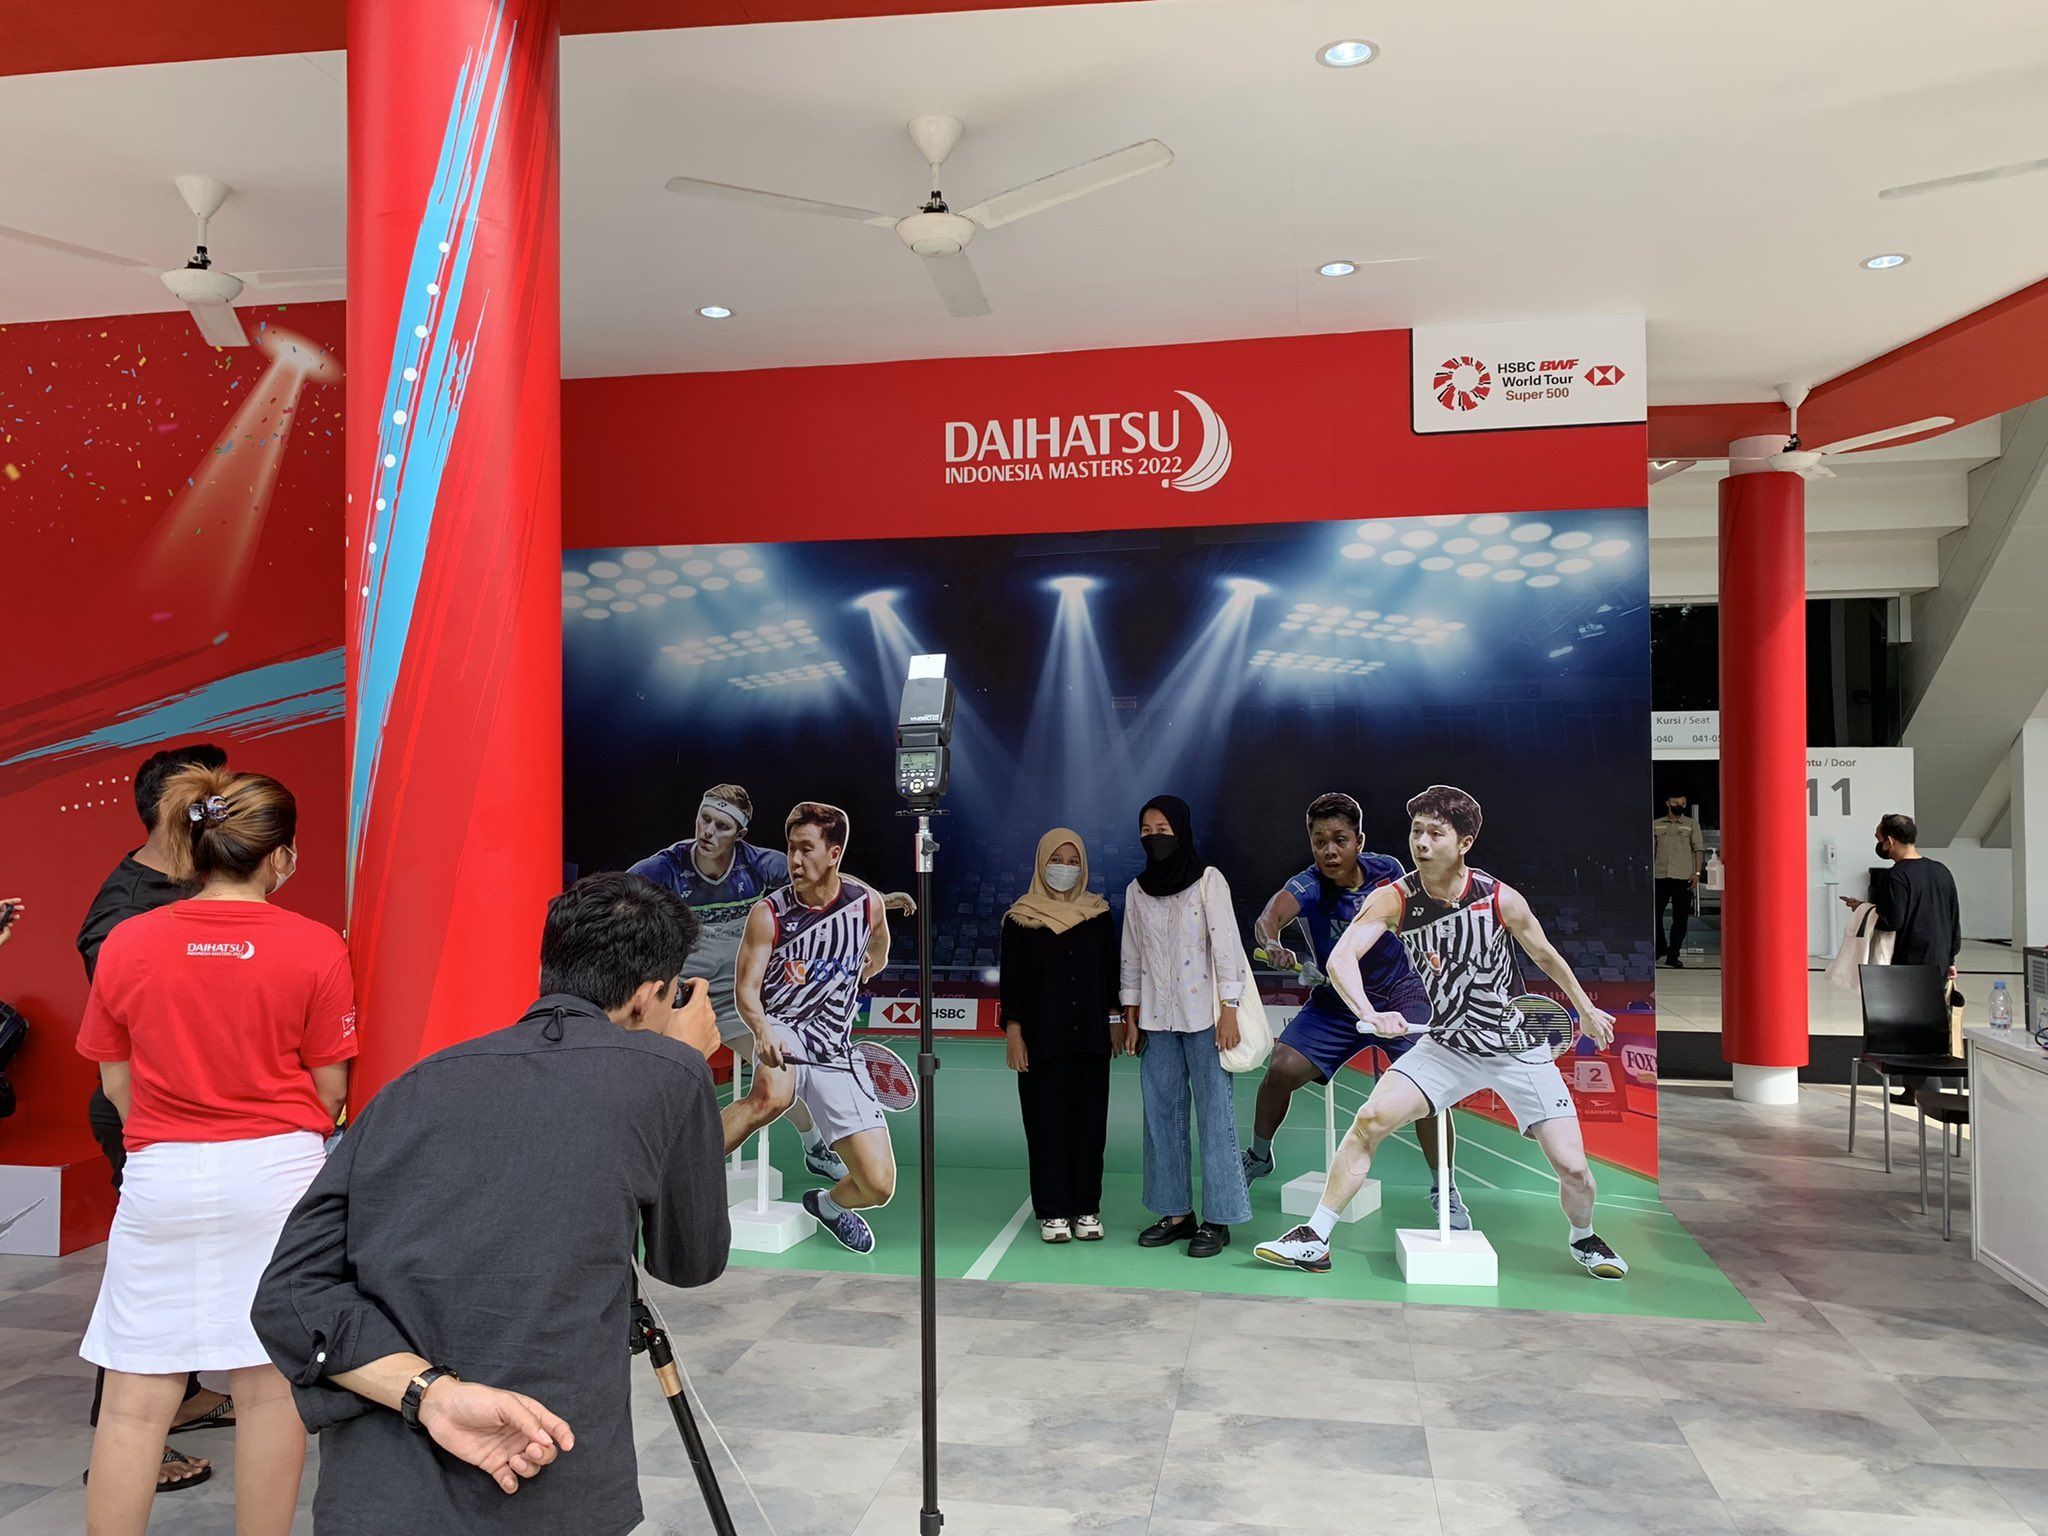 Pengunjung bisa berfoto di photobooth yang disediakan booth Daihatsu saat gelaran Indonesia Masters 2022.